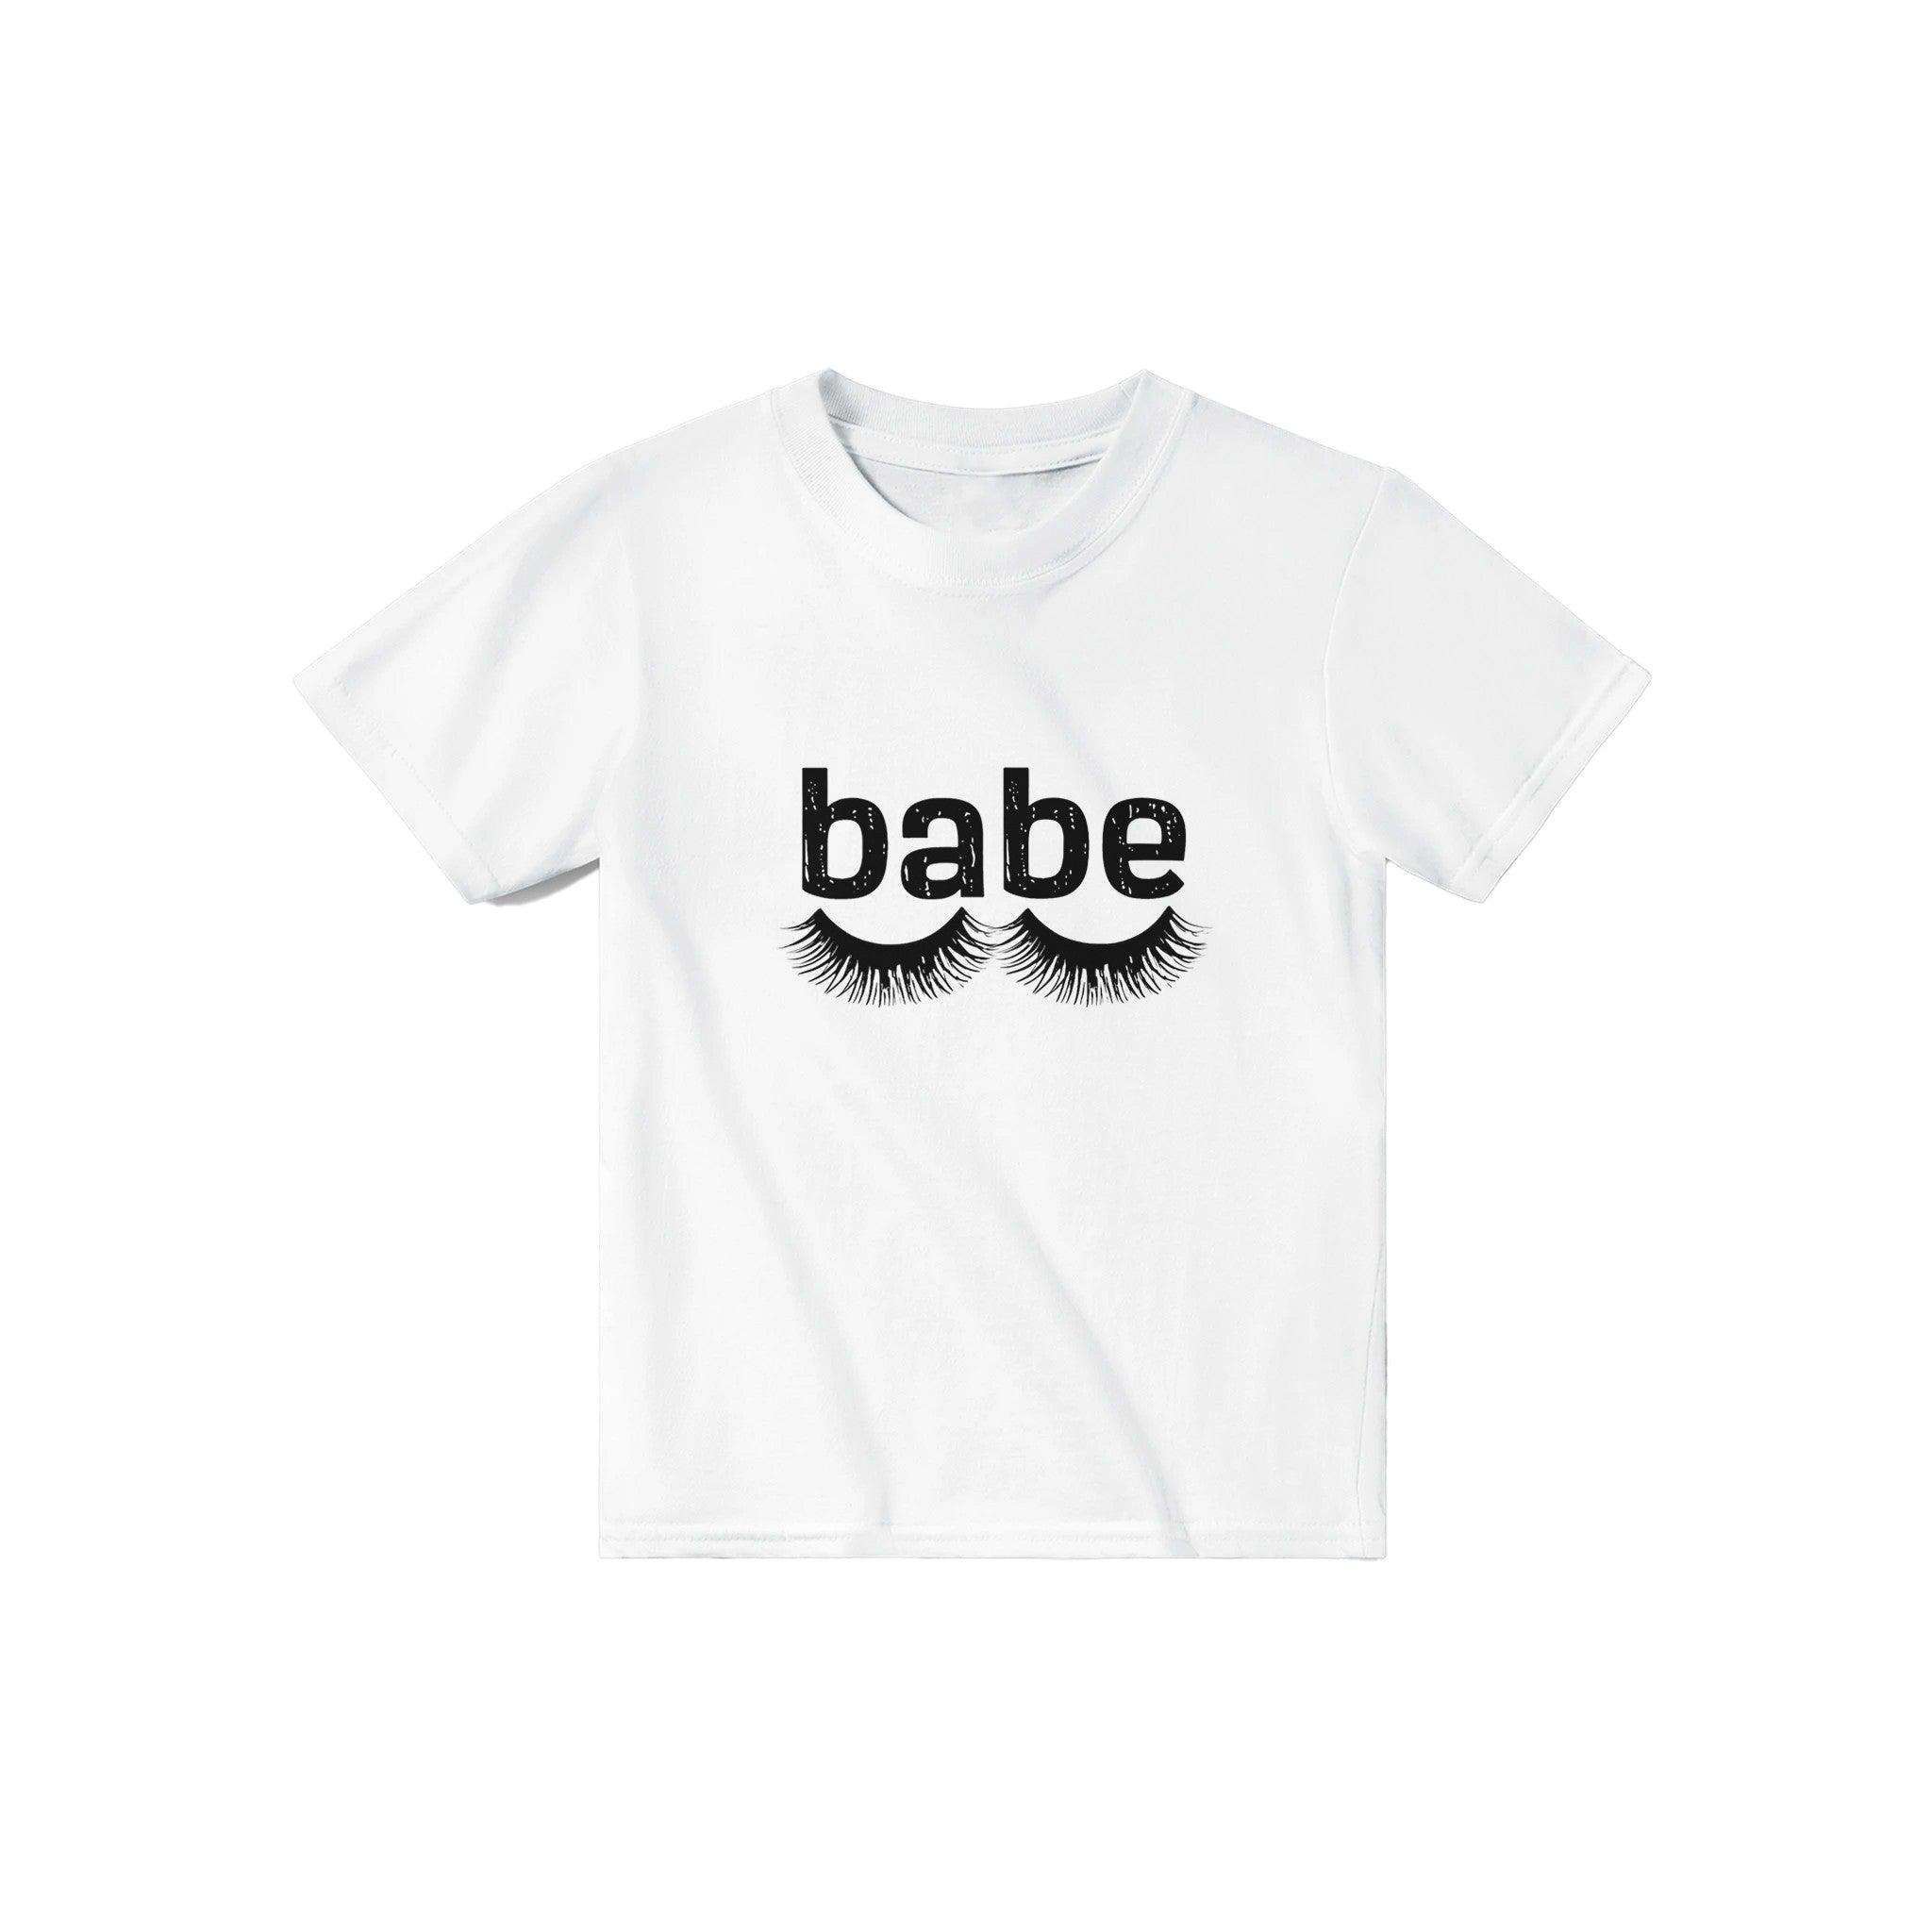 'babe' Baby Tee - POMA